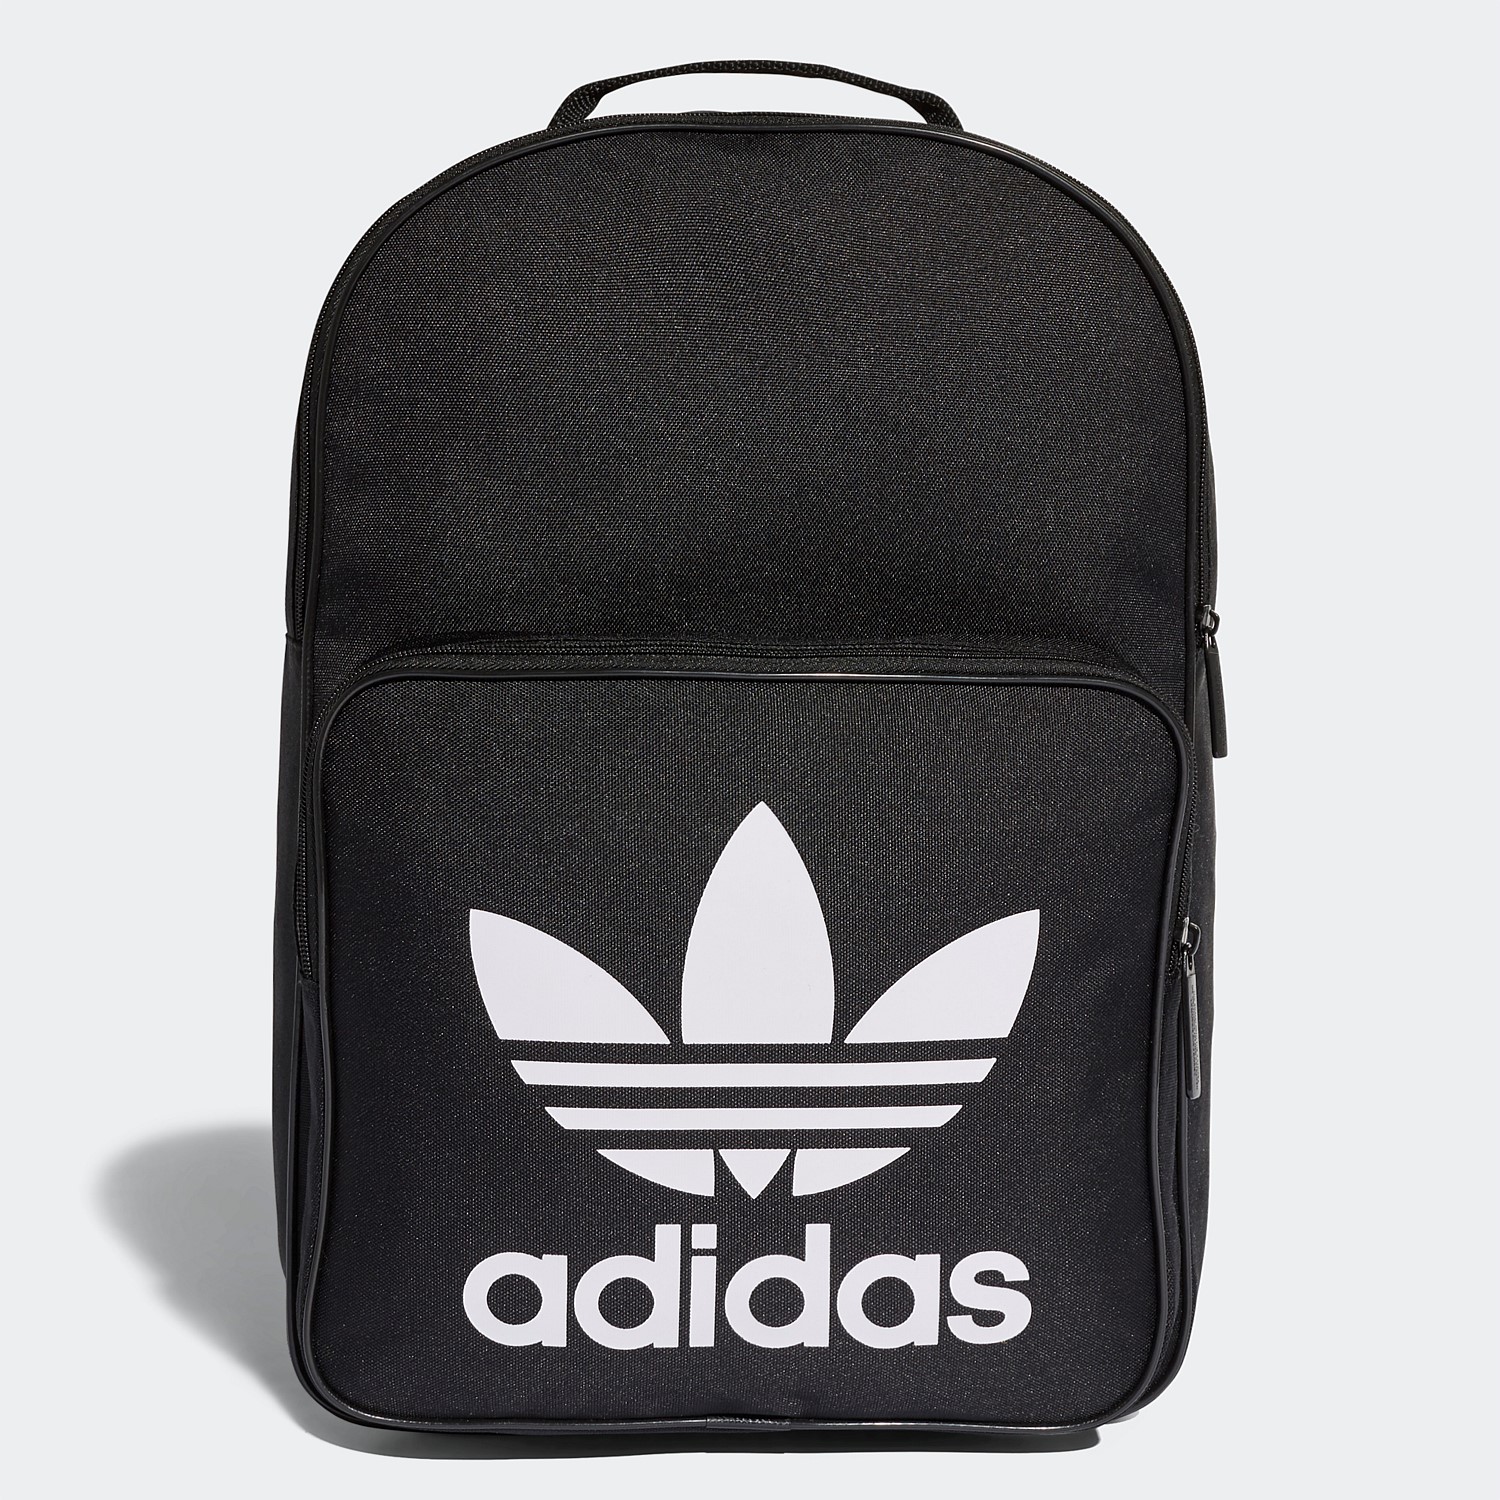 adidas backpack nz